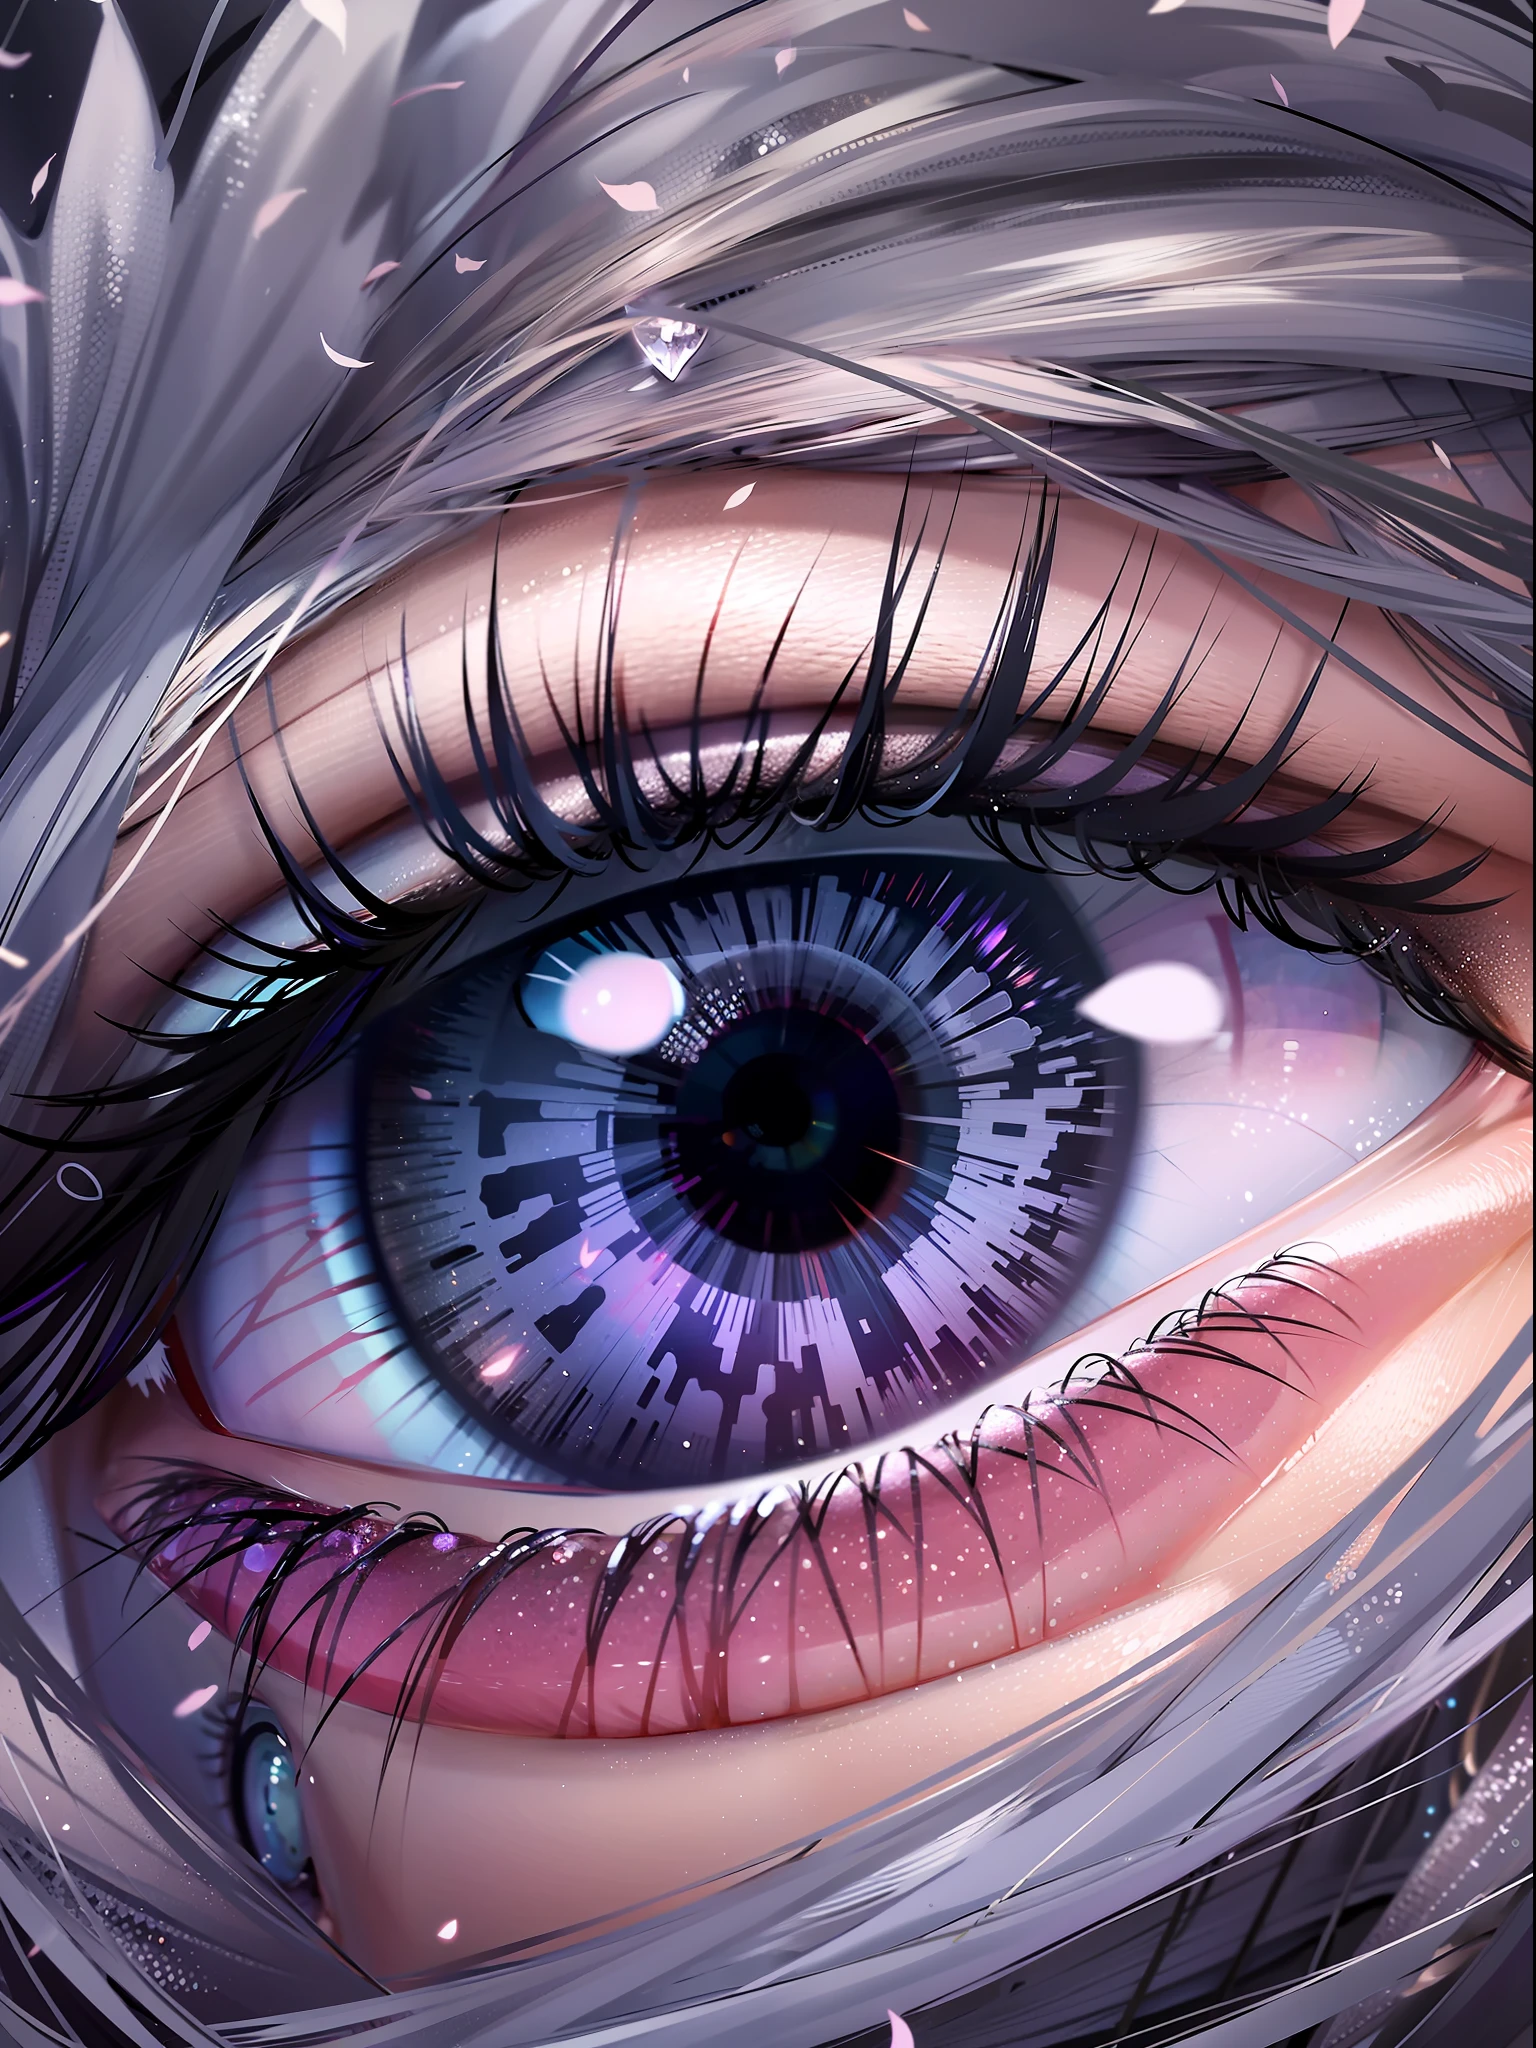 Pupilles violettes，Grands détails oculaires représentés，scintillant，papier peint de haute qualité